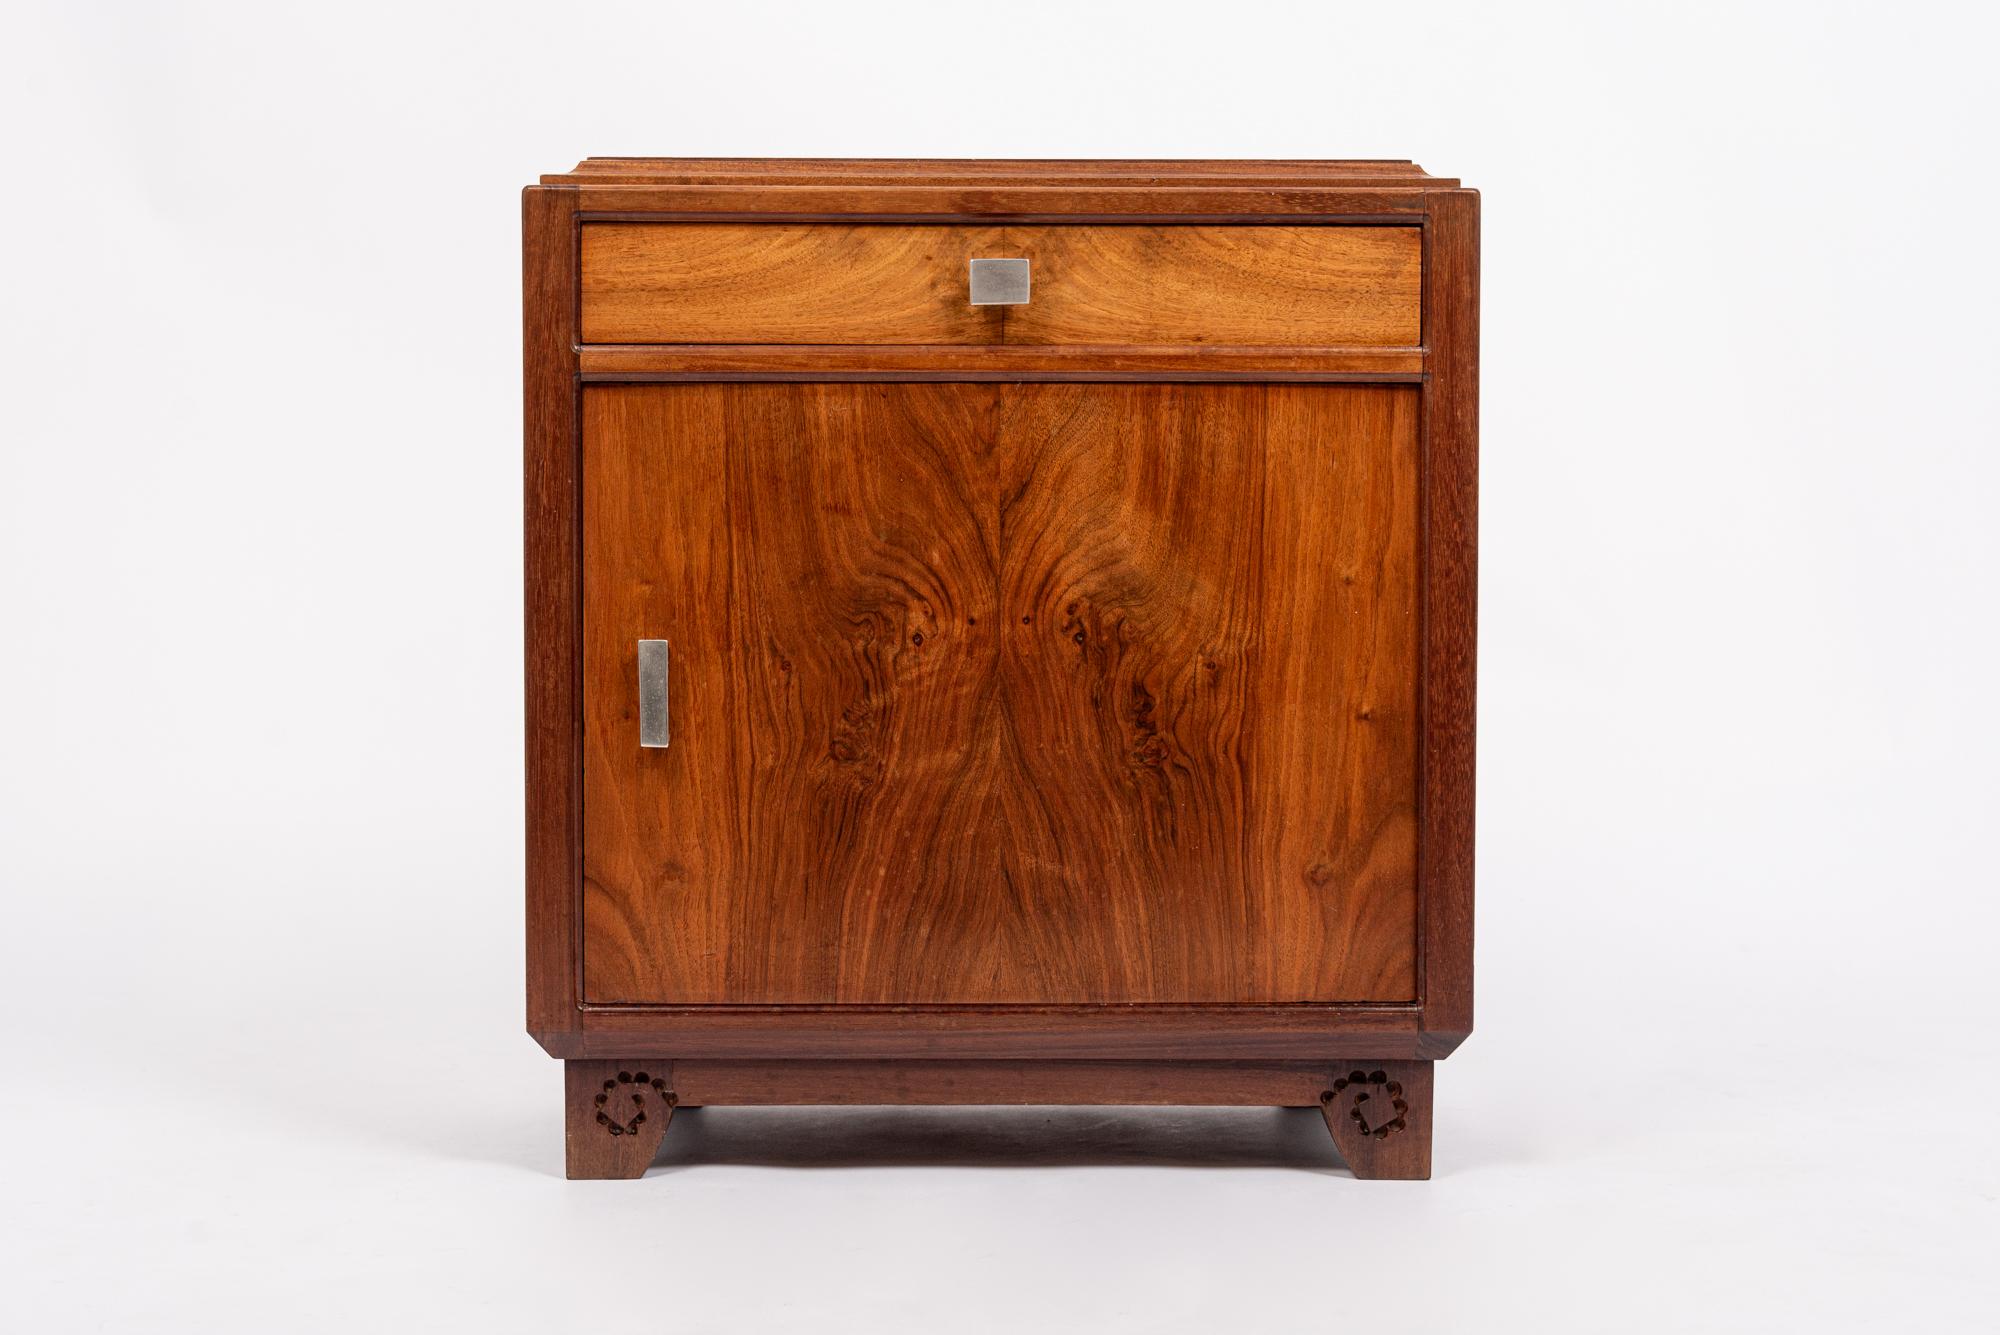 Cette charmante commode ou table de nuit ancienne en bois de style Art nouveau français a été conçue par Louis Majorelle et fabriquée à Nancy, en France, vers 1910-1920. Ce meuble exceptionnel, de qualité muséale, illustre l'élégance du design Art